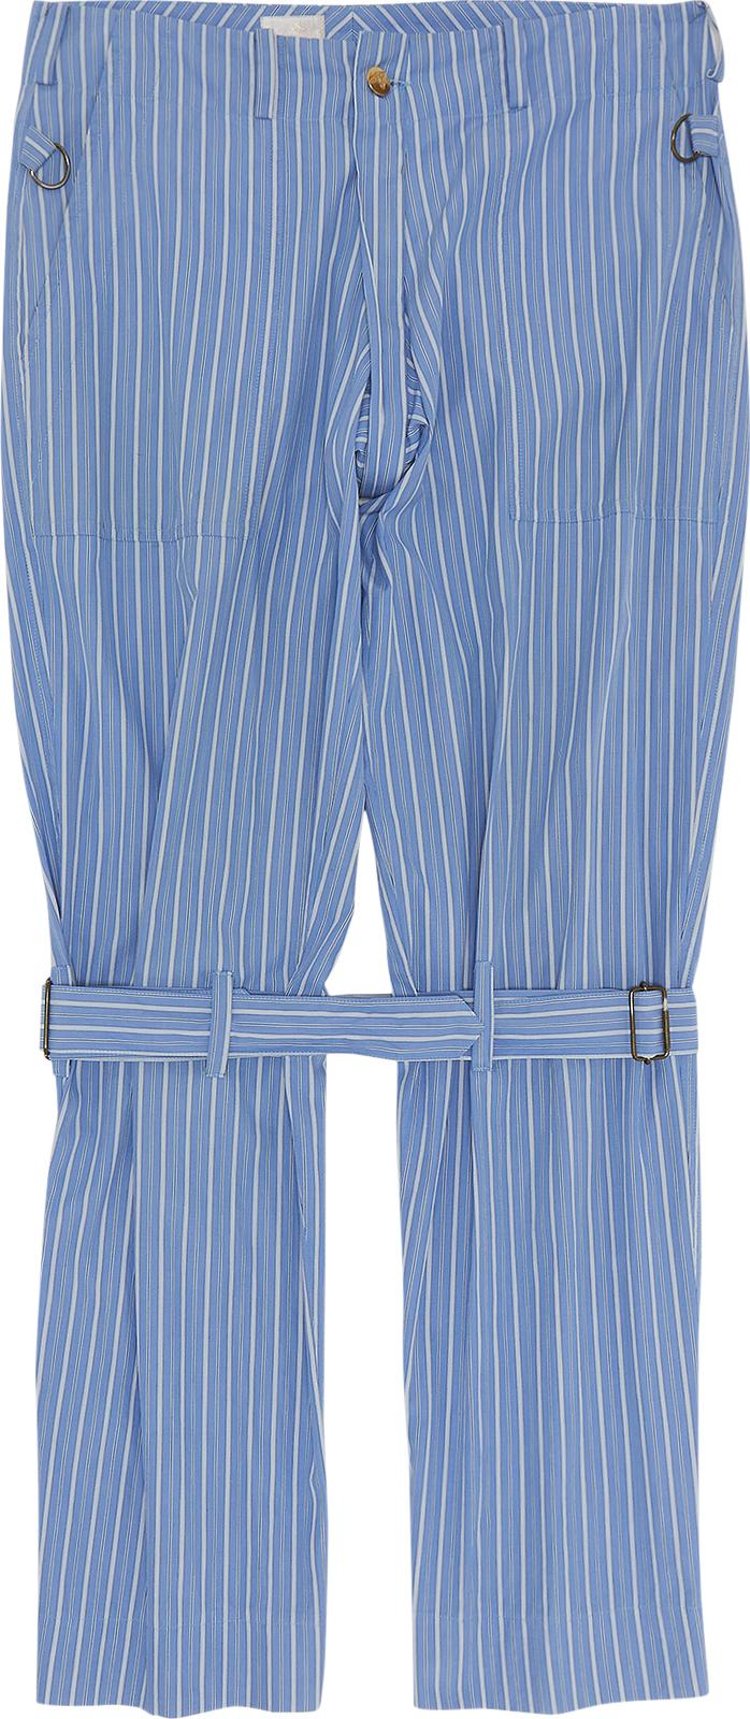 Vintage Vivienne Westwood Striped Bondage Trousers 'Blue'